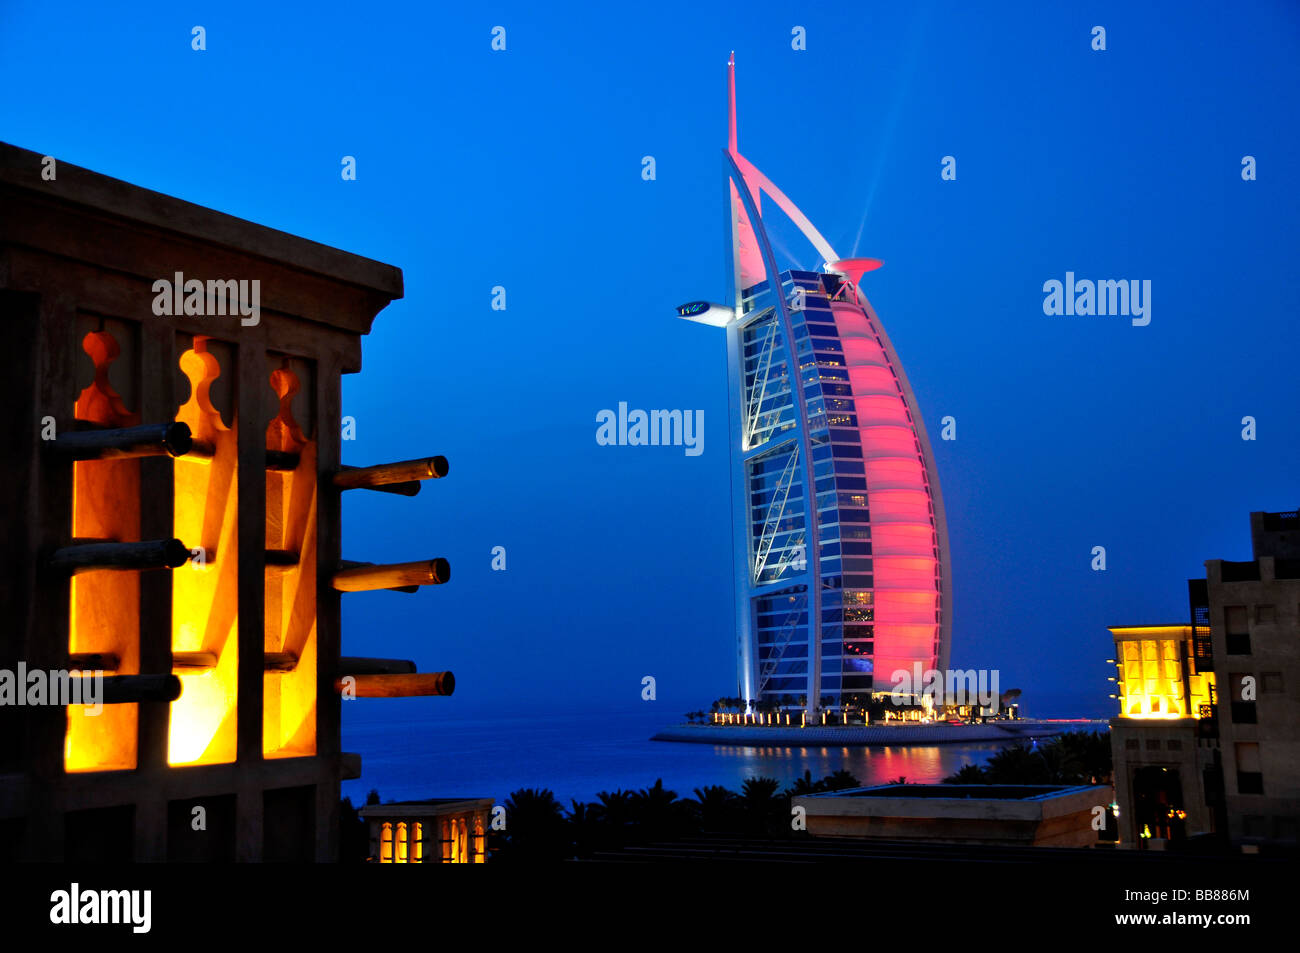 Stilizzata torre eolica del Madinat Jumeirah resort di fronte alla facciata illuminata delle sette stelle Burj al Arab, Ara Foto Stock